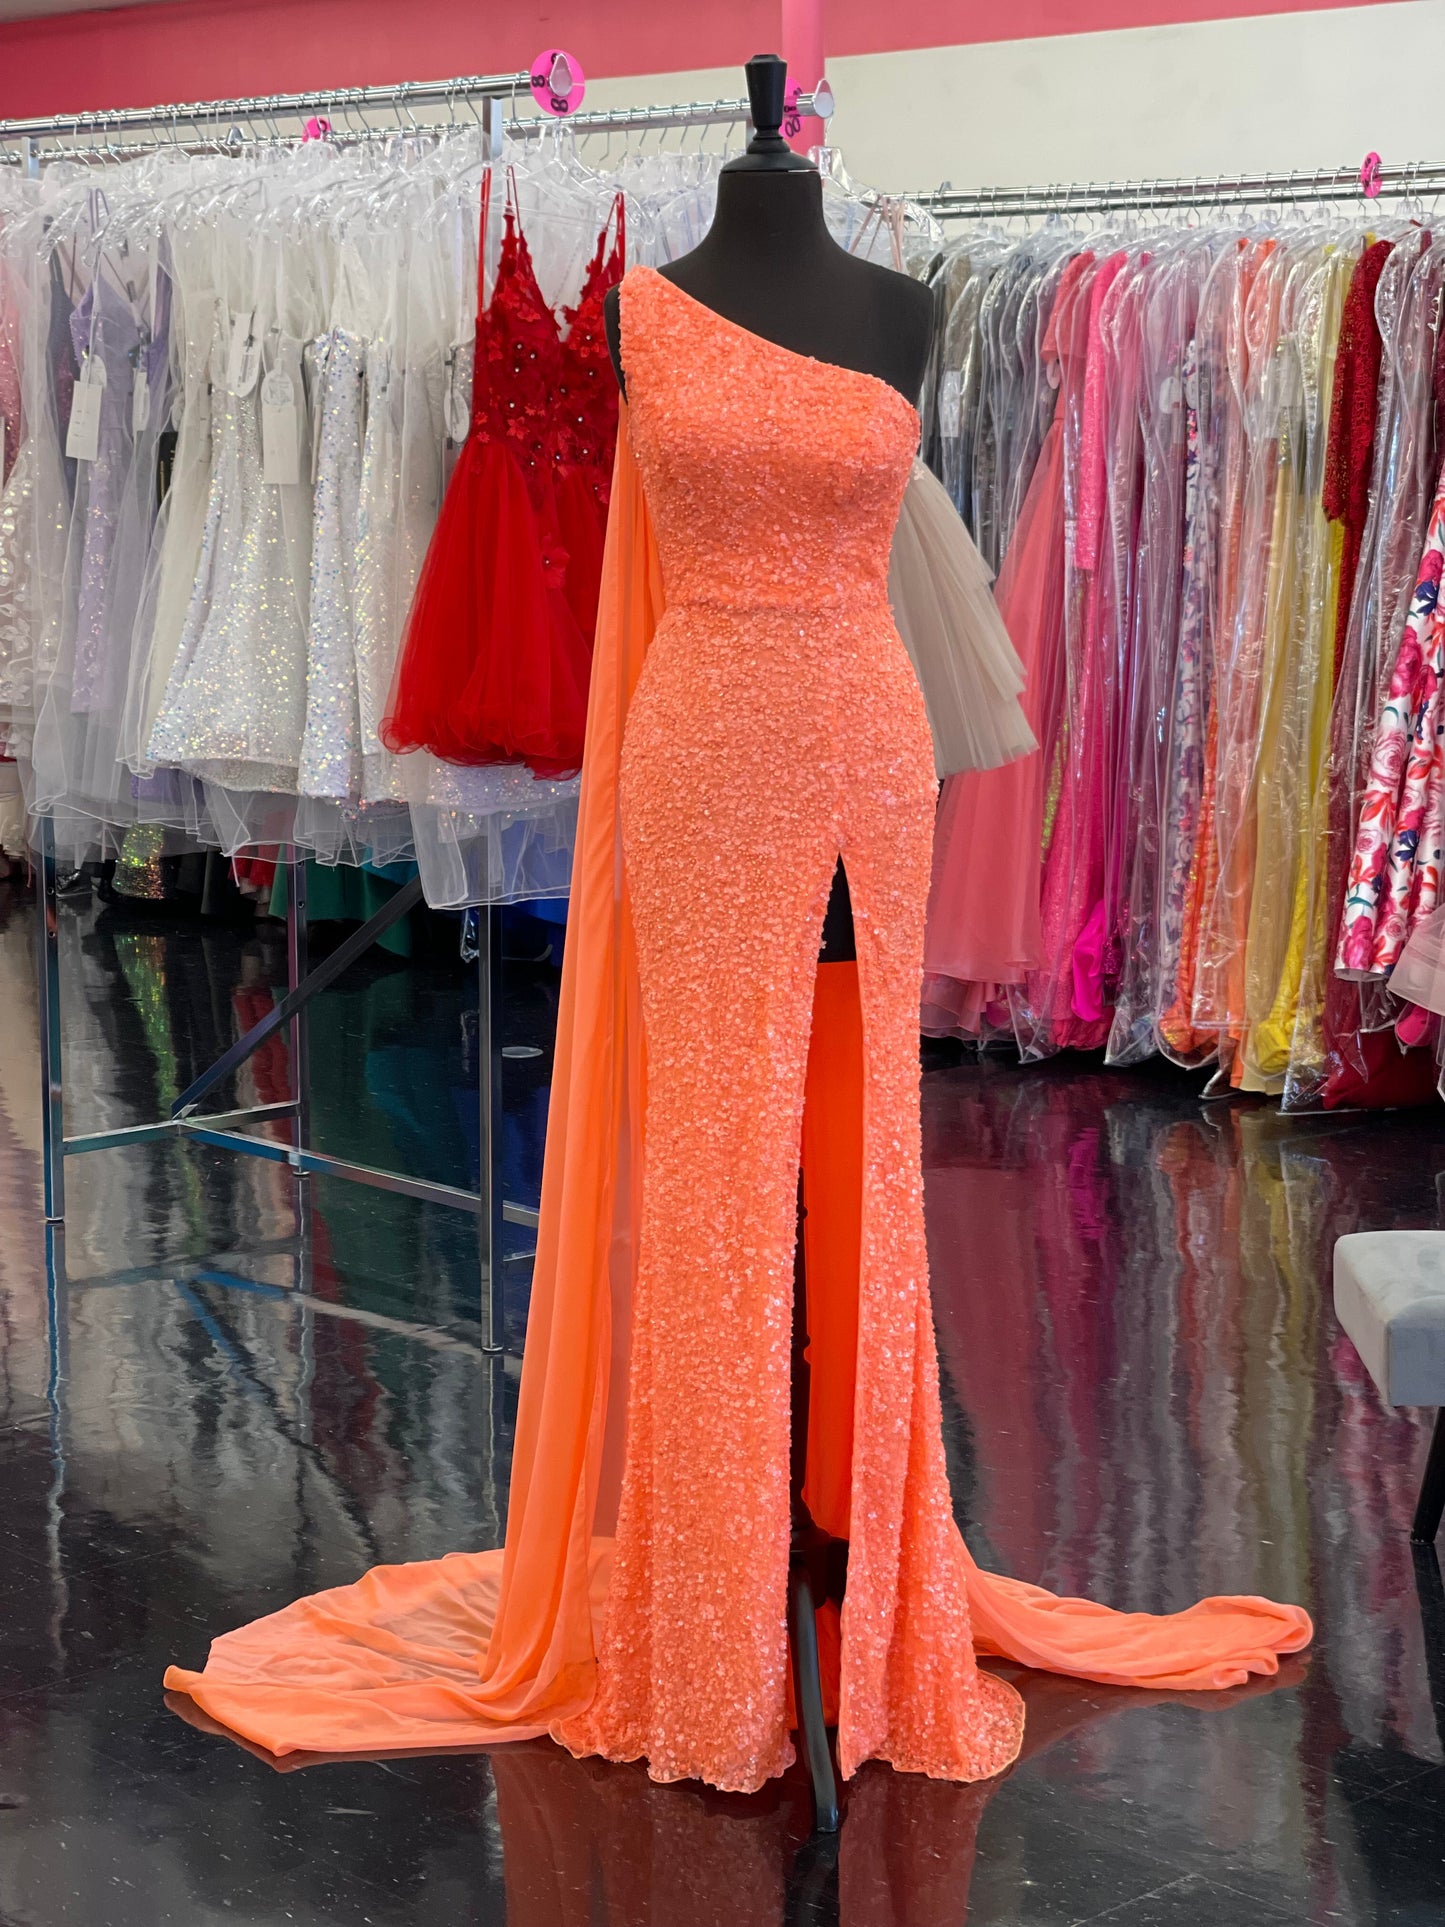 Ashley Lauren 11290 Size 2 Hot Pink One Shoulder Prom Dress